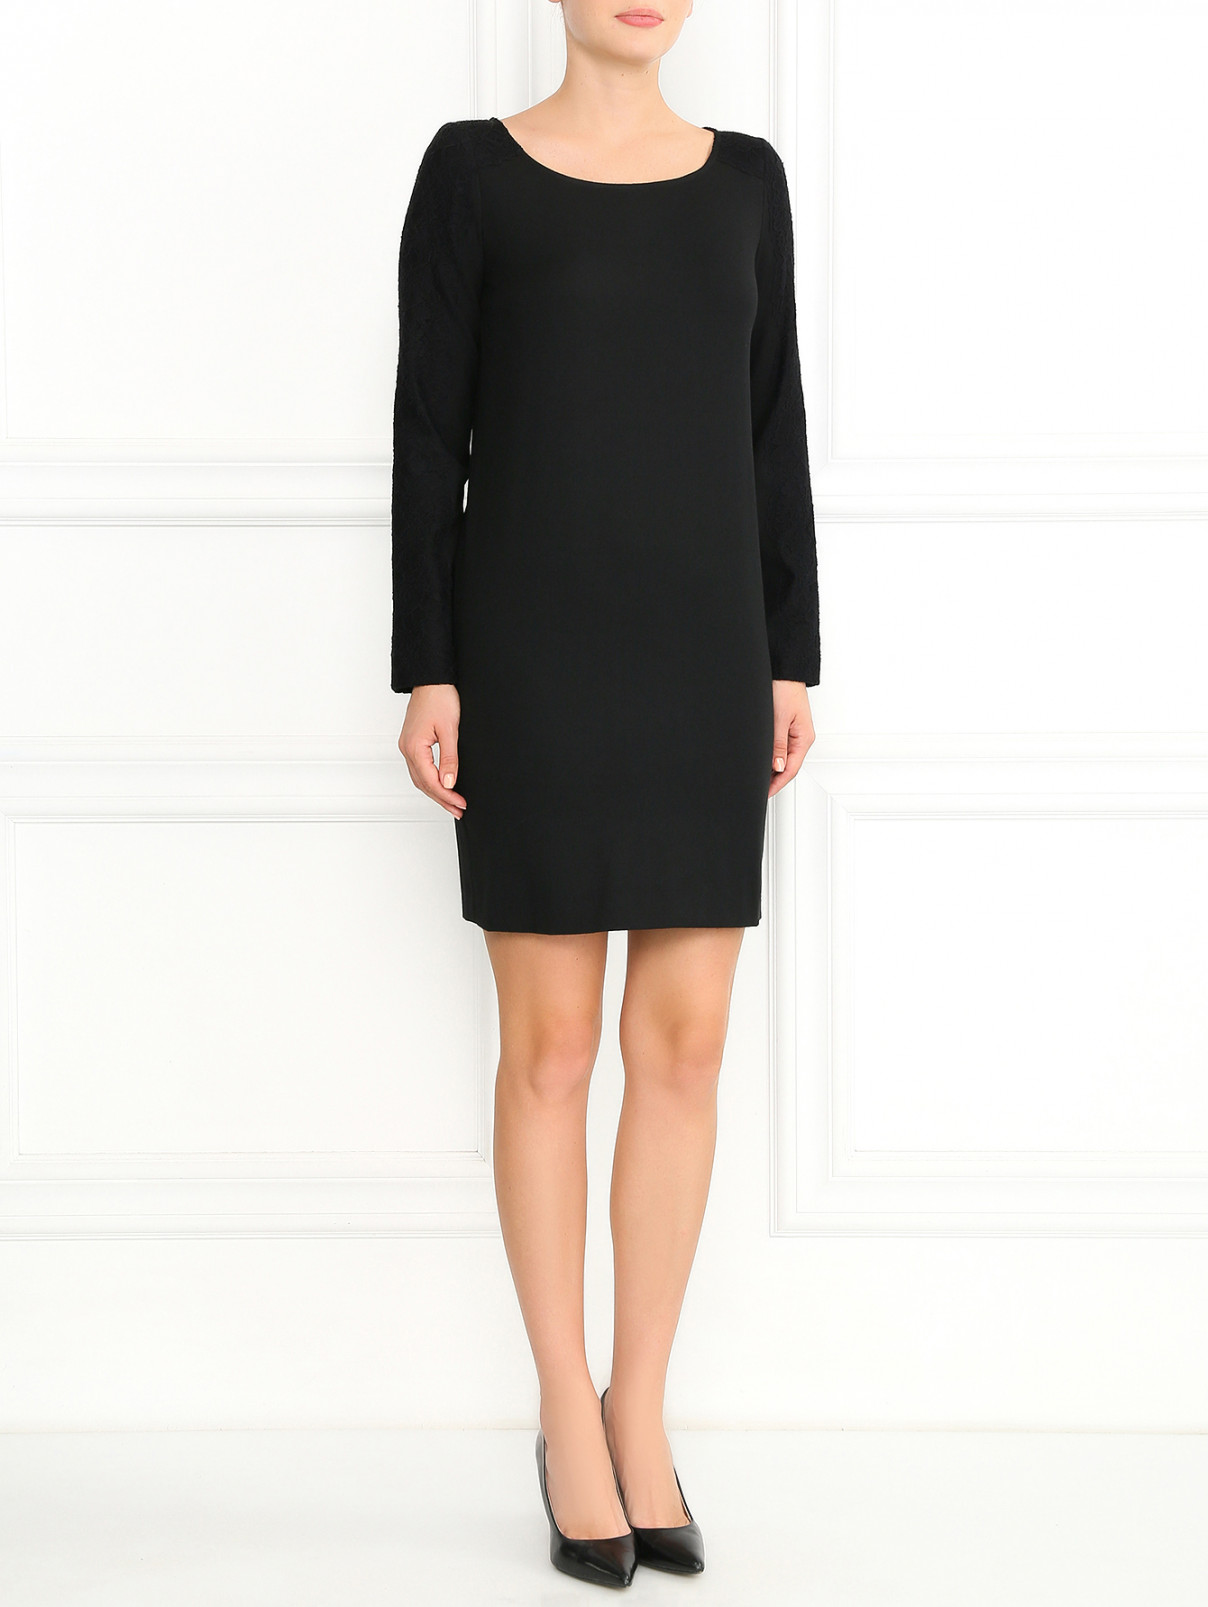 Платье из шерсти и хлопка с кружевной отделкой Love Moschino  –  Модель Общий вид  – Цвет:  Черный